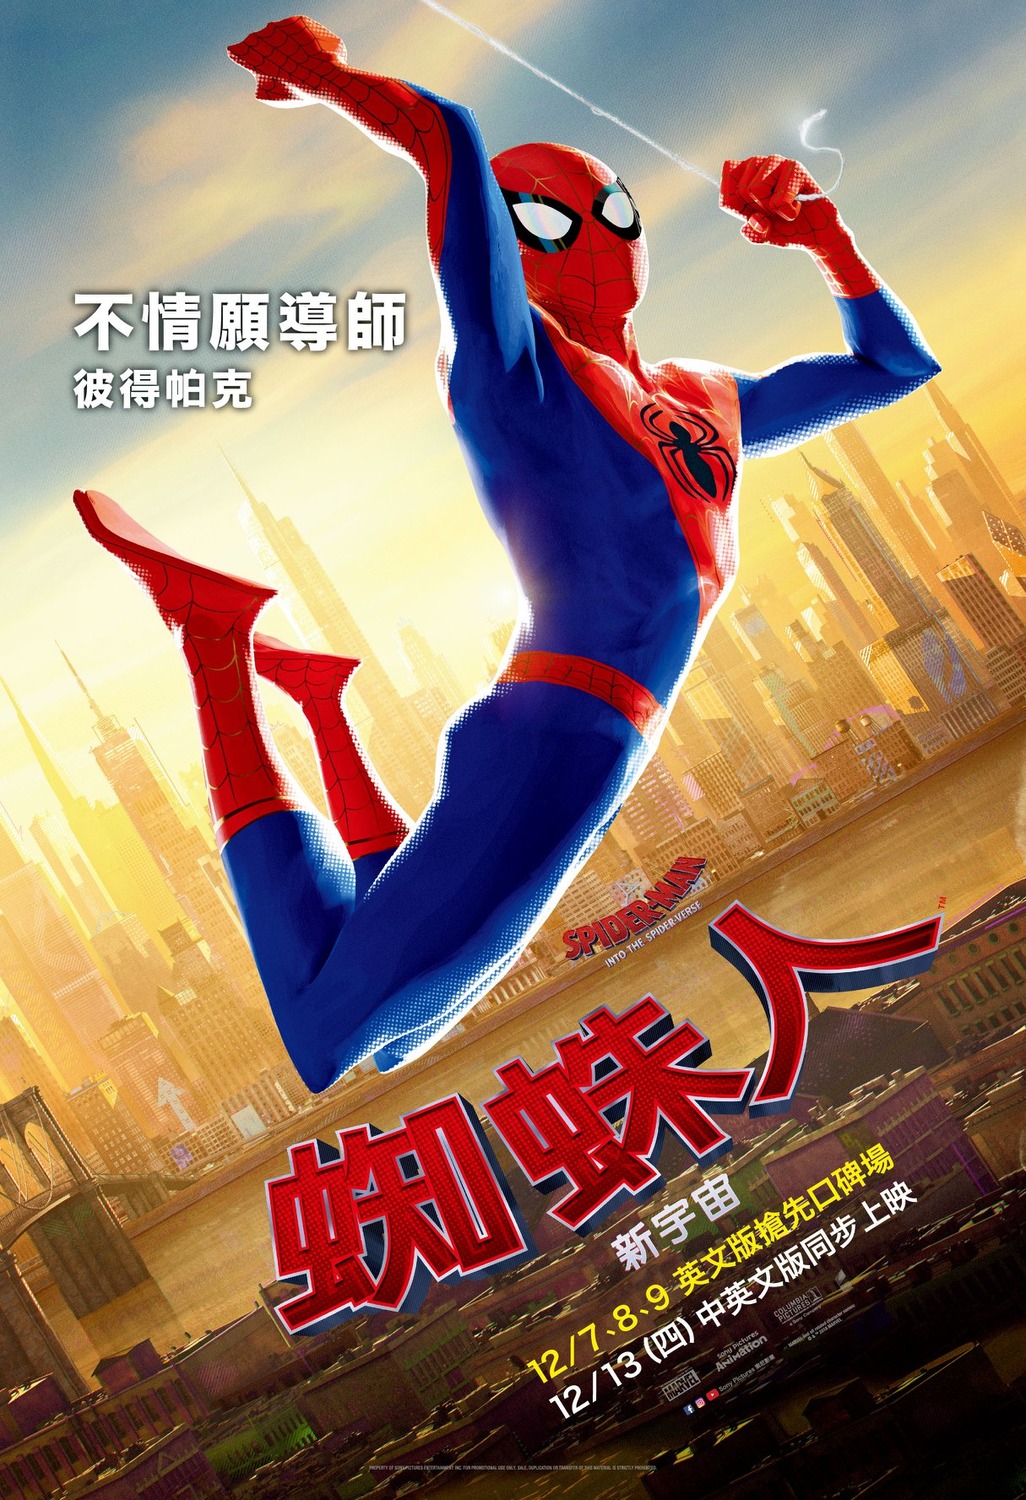 Постер - Человек-паук: Через вселенные: 1026x1500 / 503.37 Кб